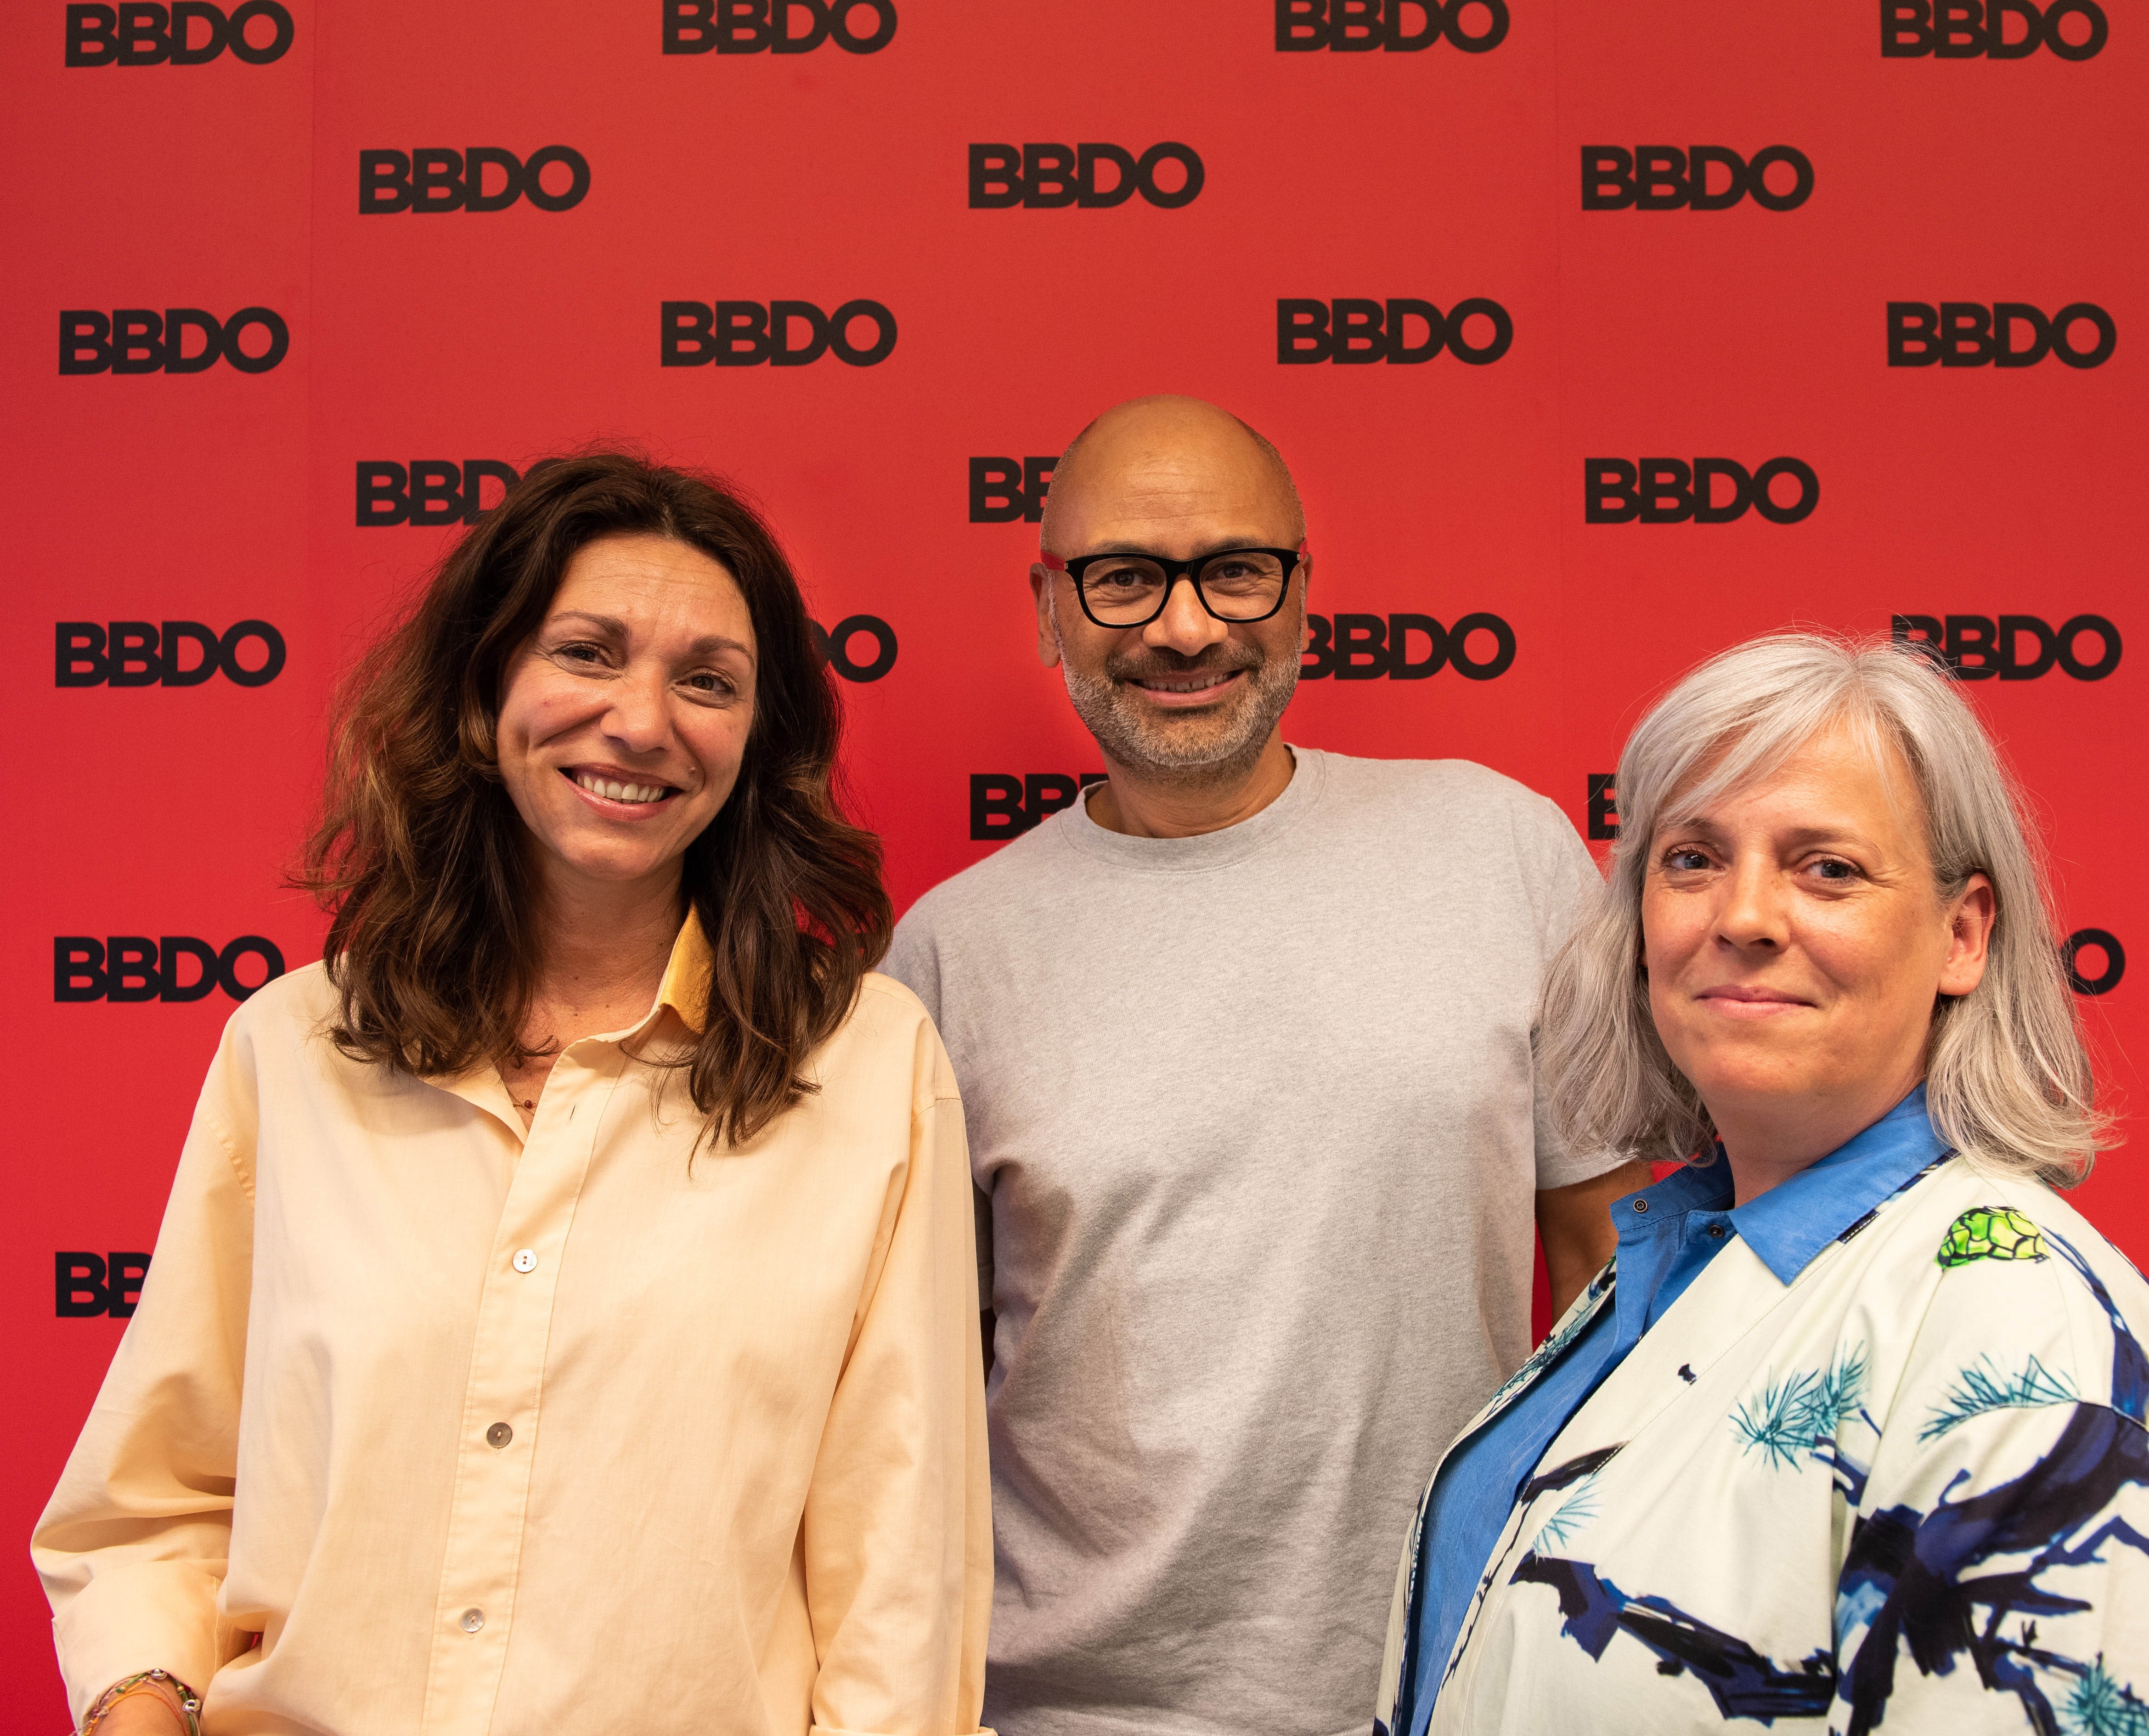 BBDO versterkt commerciële directie met Pascal Kemajou